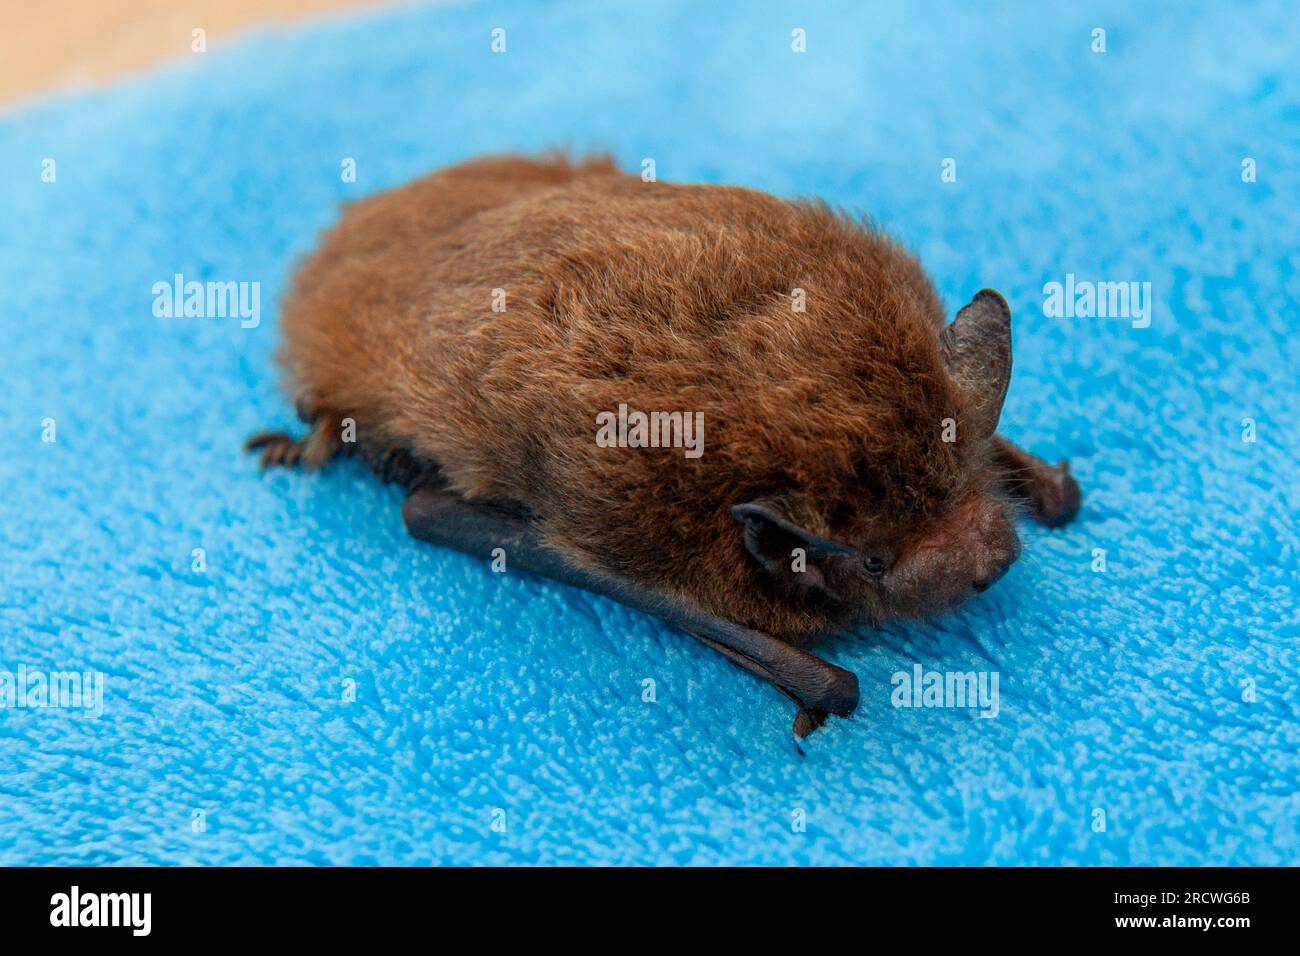 Nathusius' bat (Pipistrellus nathusii) Stock Photo